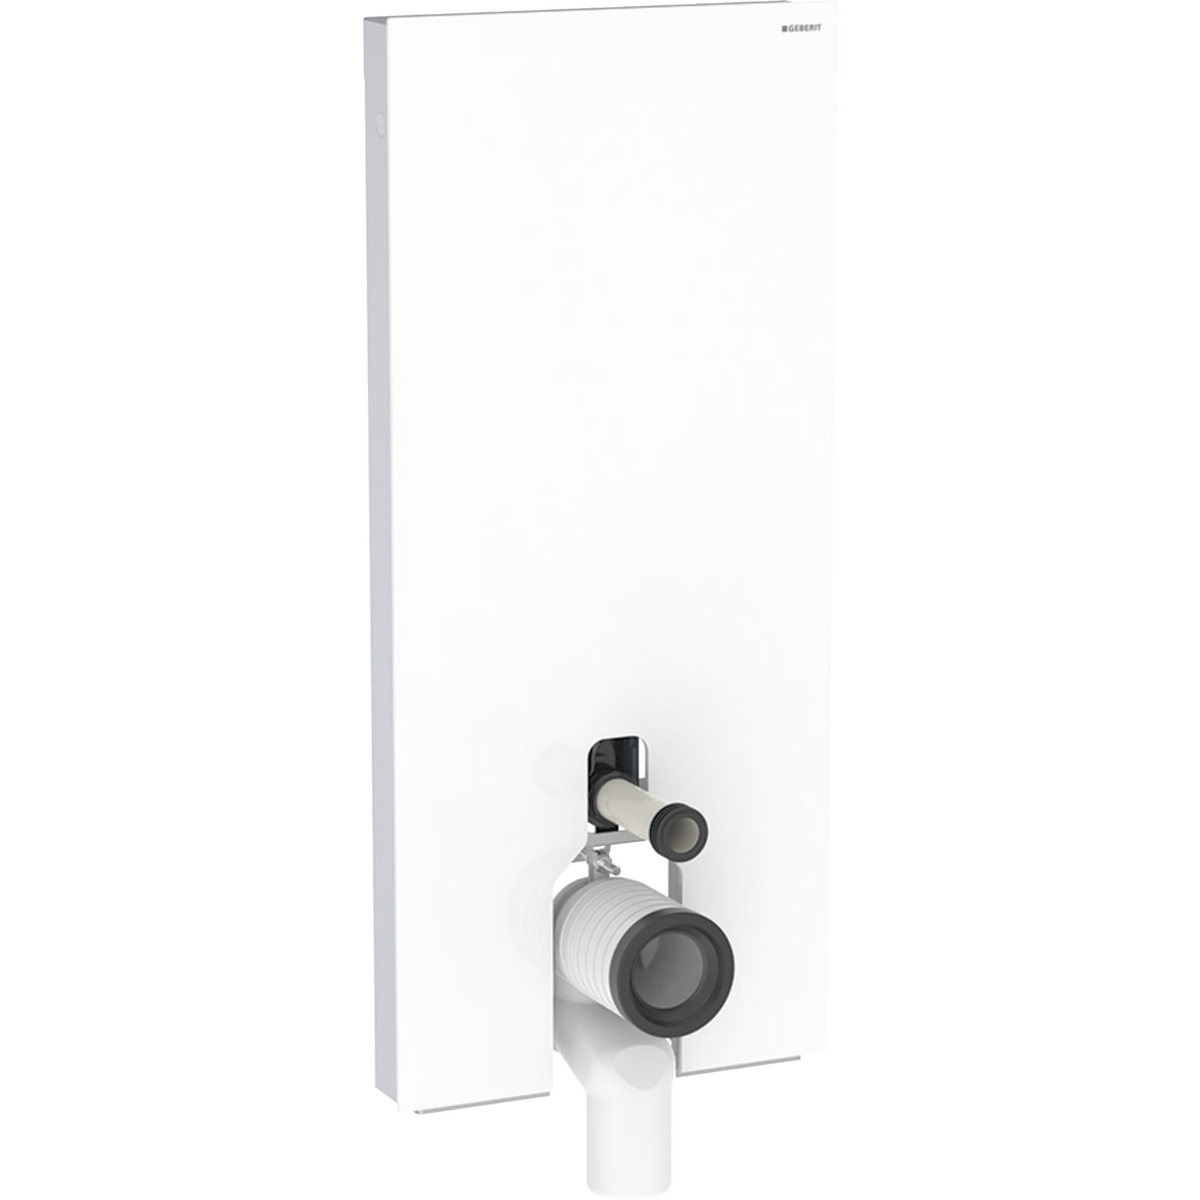 Monolith Sanitärmodul für Stand-WC, 114 cm, Frontverkleidung aus Glas: Glas weiß, Aluminium